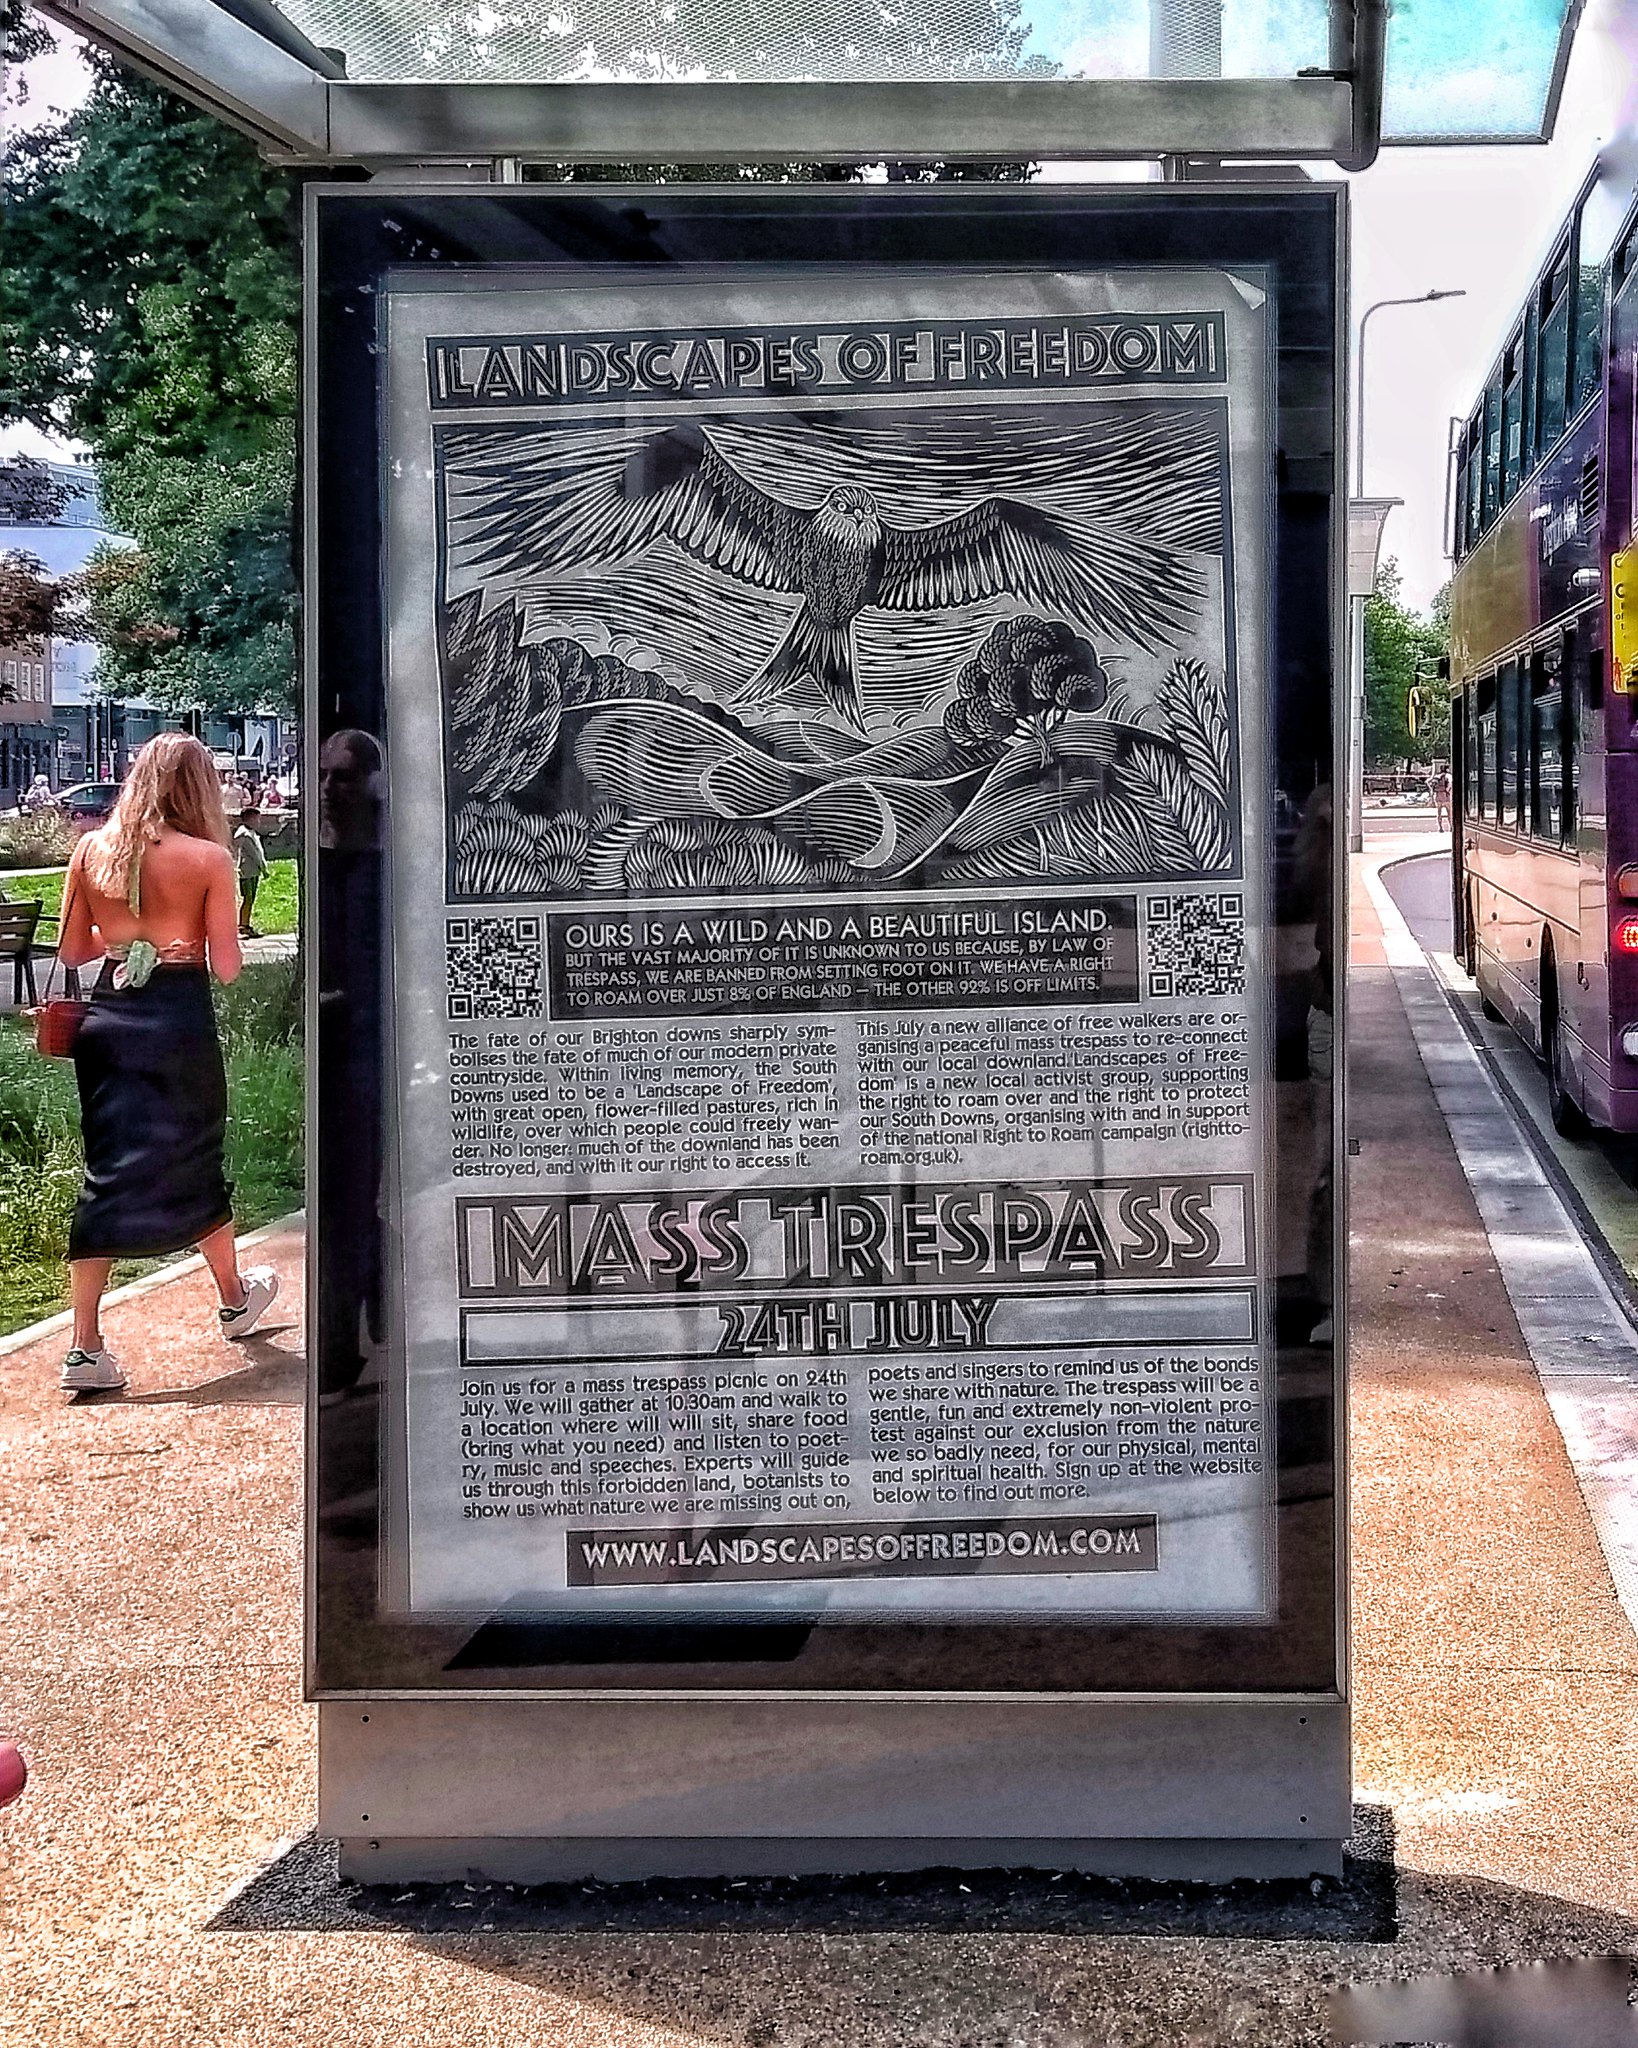 Mass trespass advertising poster